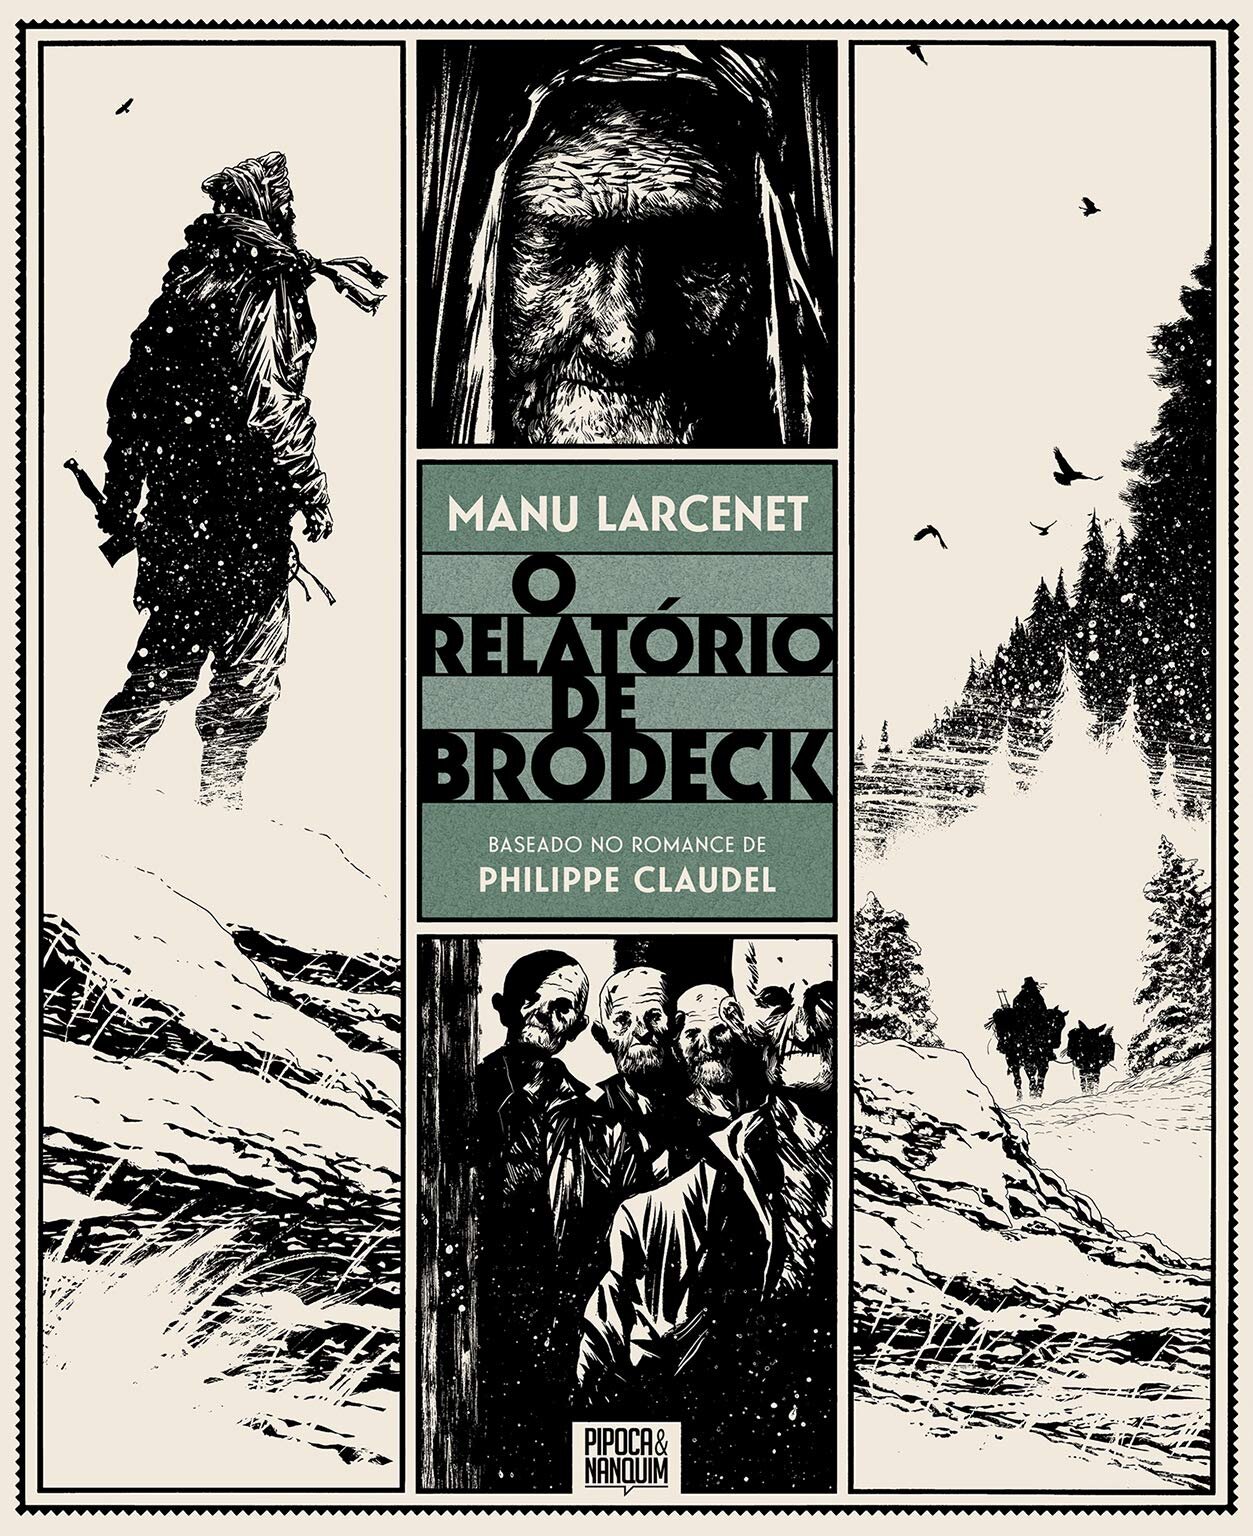 Relatório de Brodeck capa.jpg